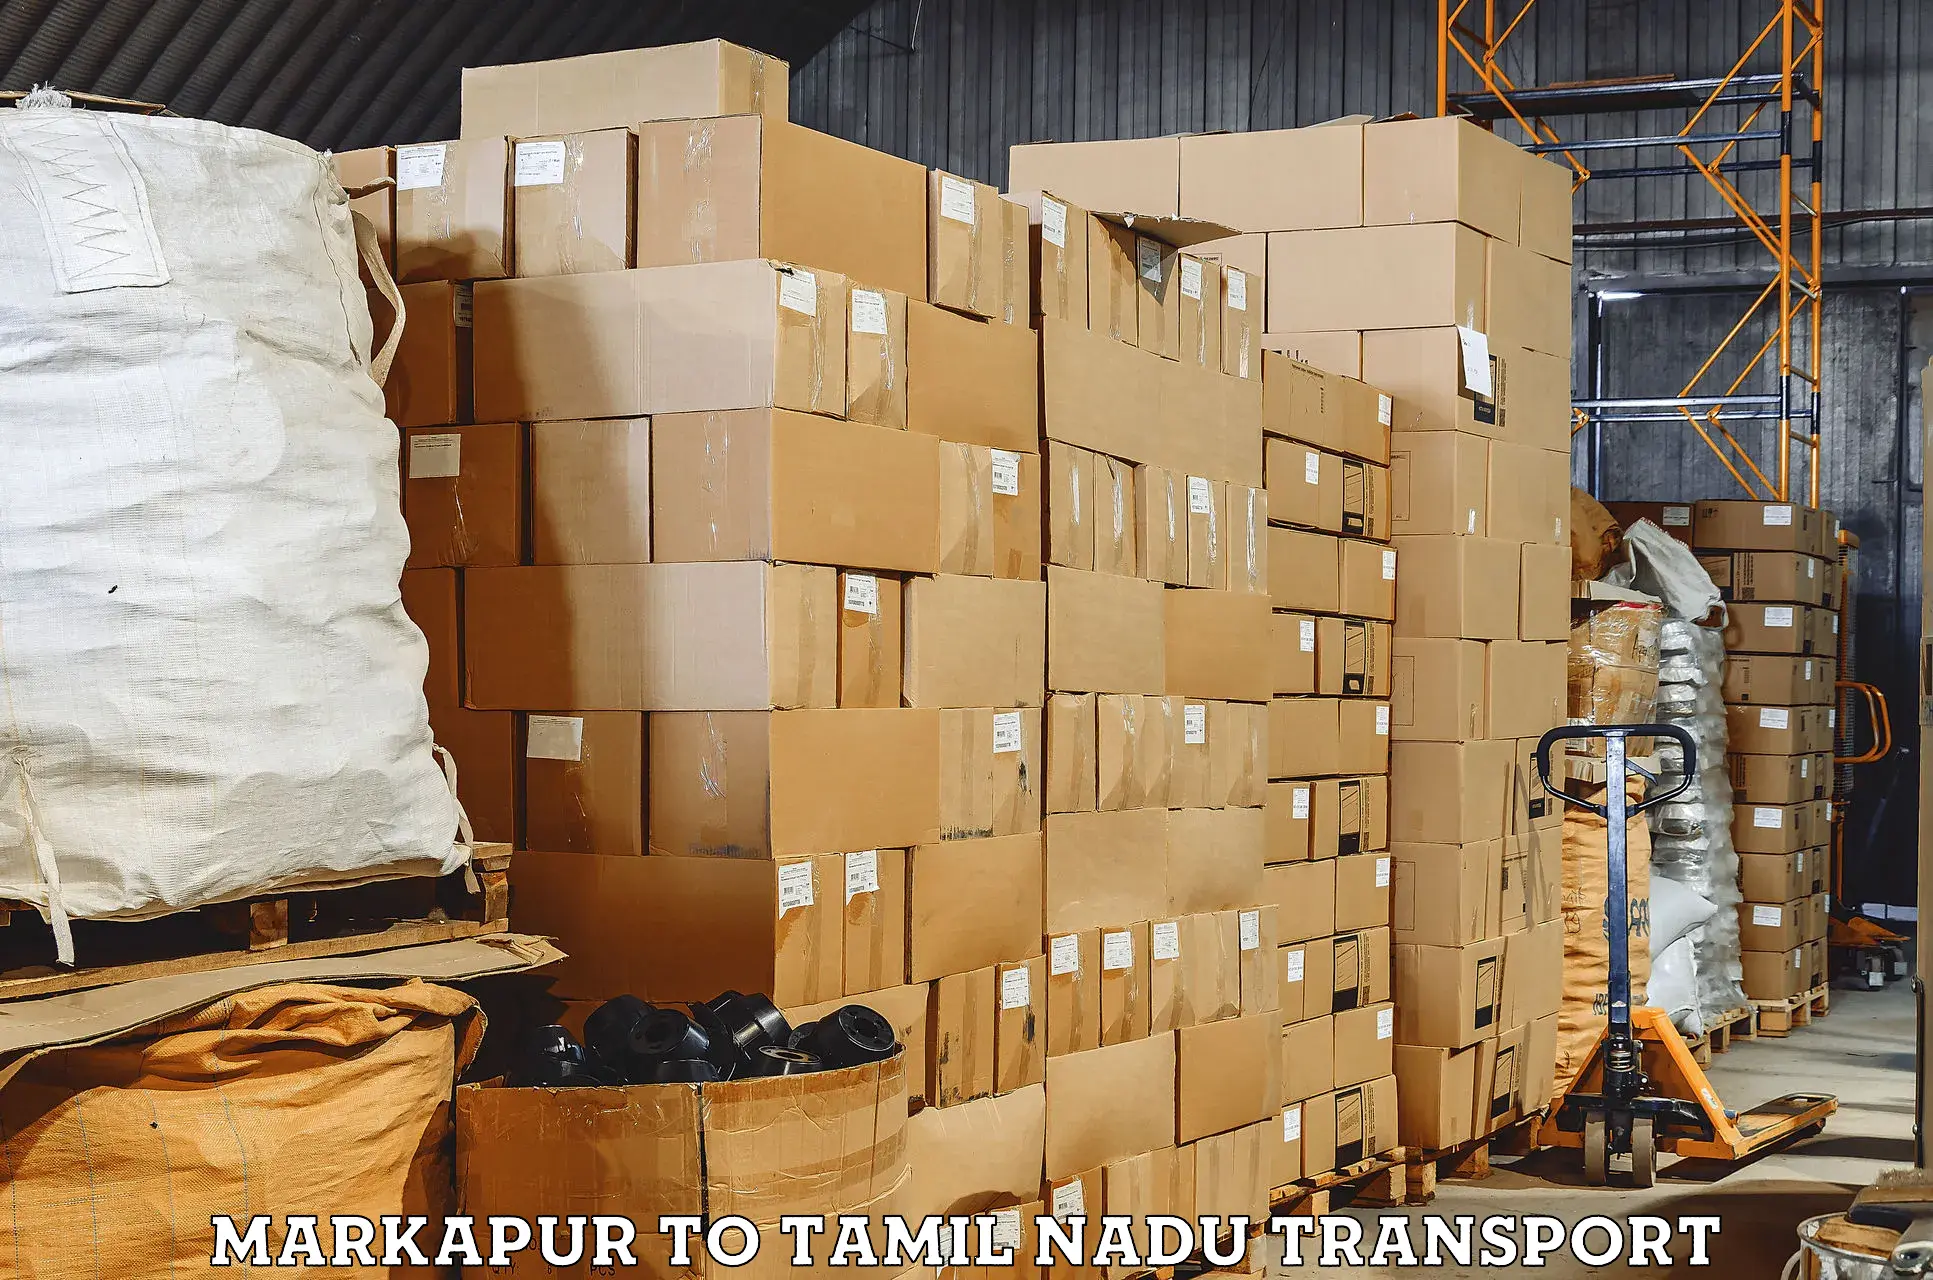 Transport services Markapur to IIIT Tiruchirappalli